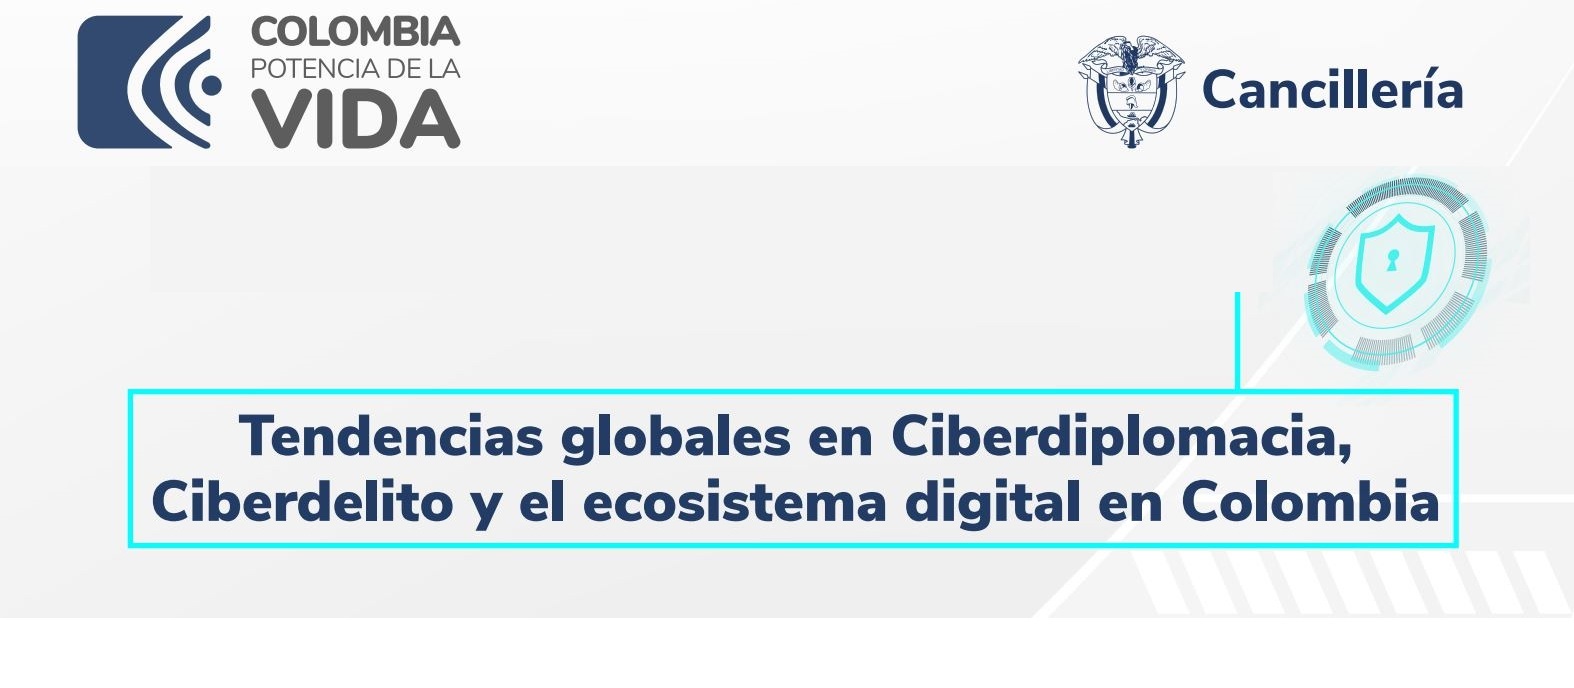 Cancillería ofreció la conferencia virtual "Tendencias globales en ciberdiplomacia, ciberdelito y el ecosistema digital en Colombia"